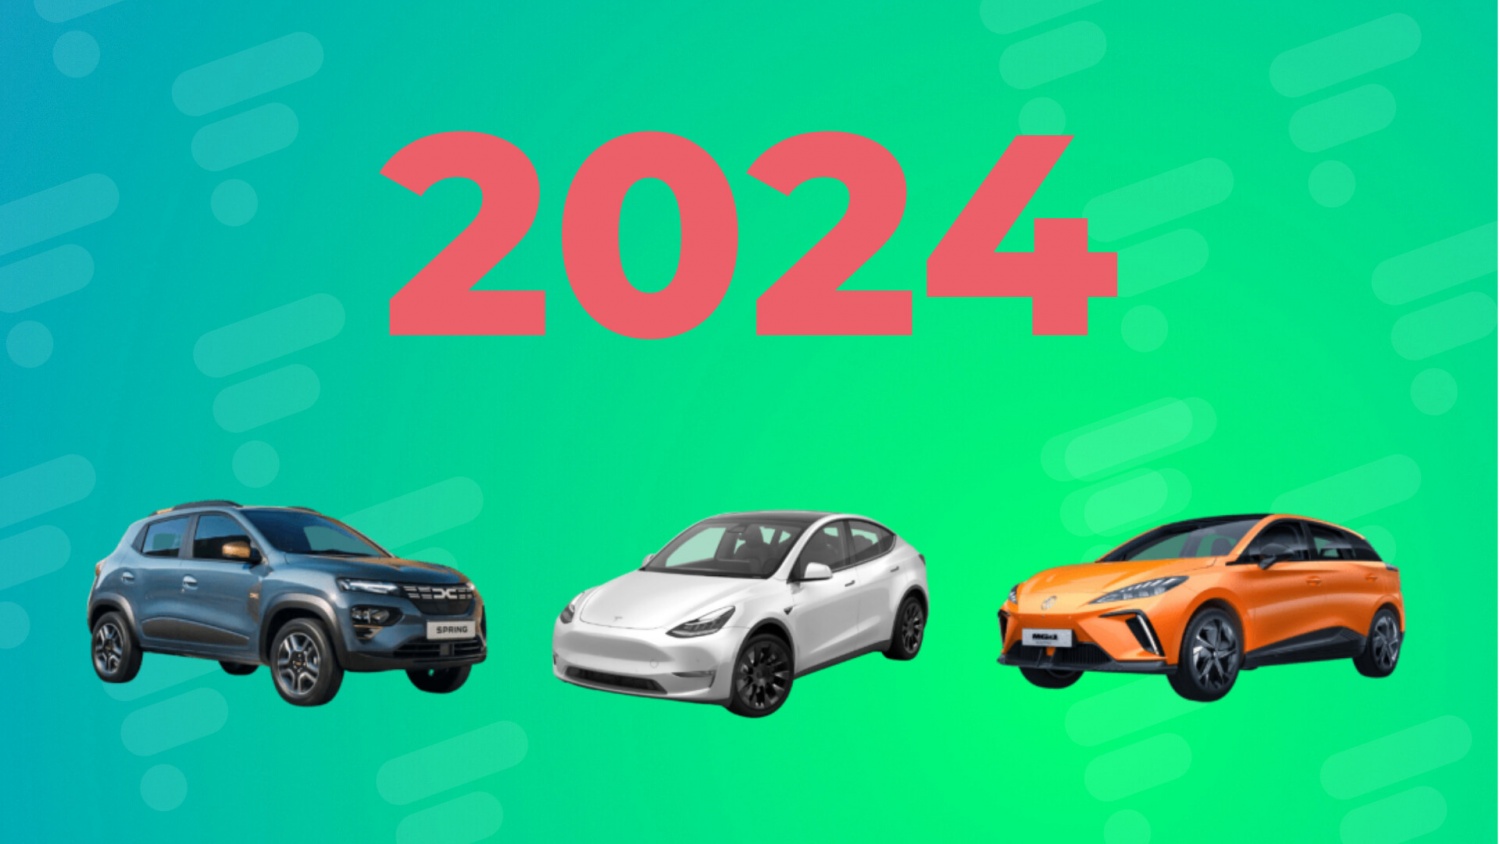 2024 sẽ là một năm kỷ lục của ô tô điện